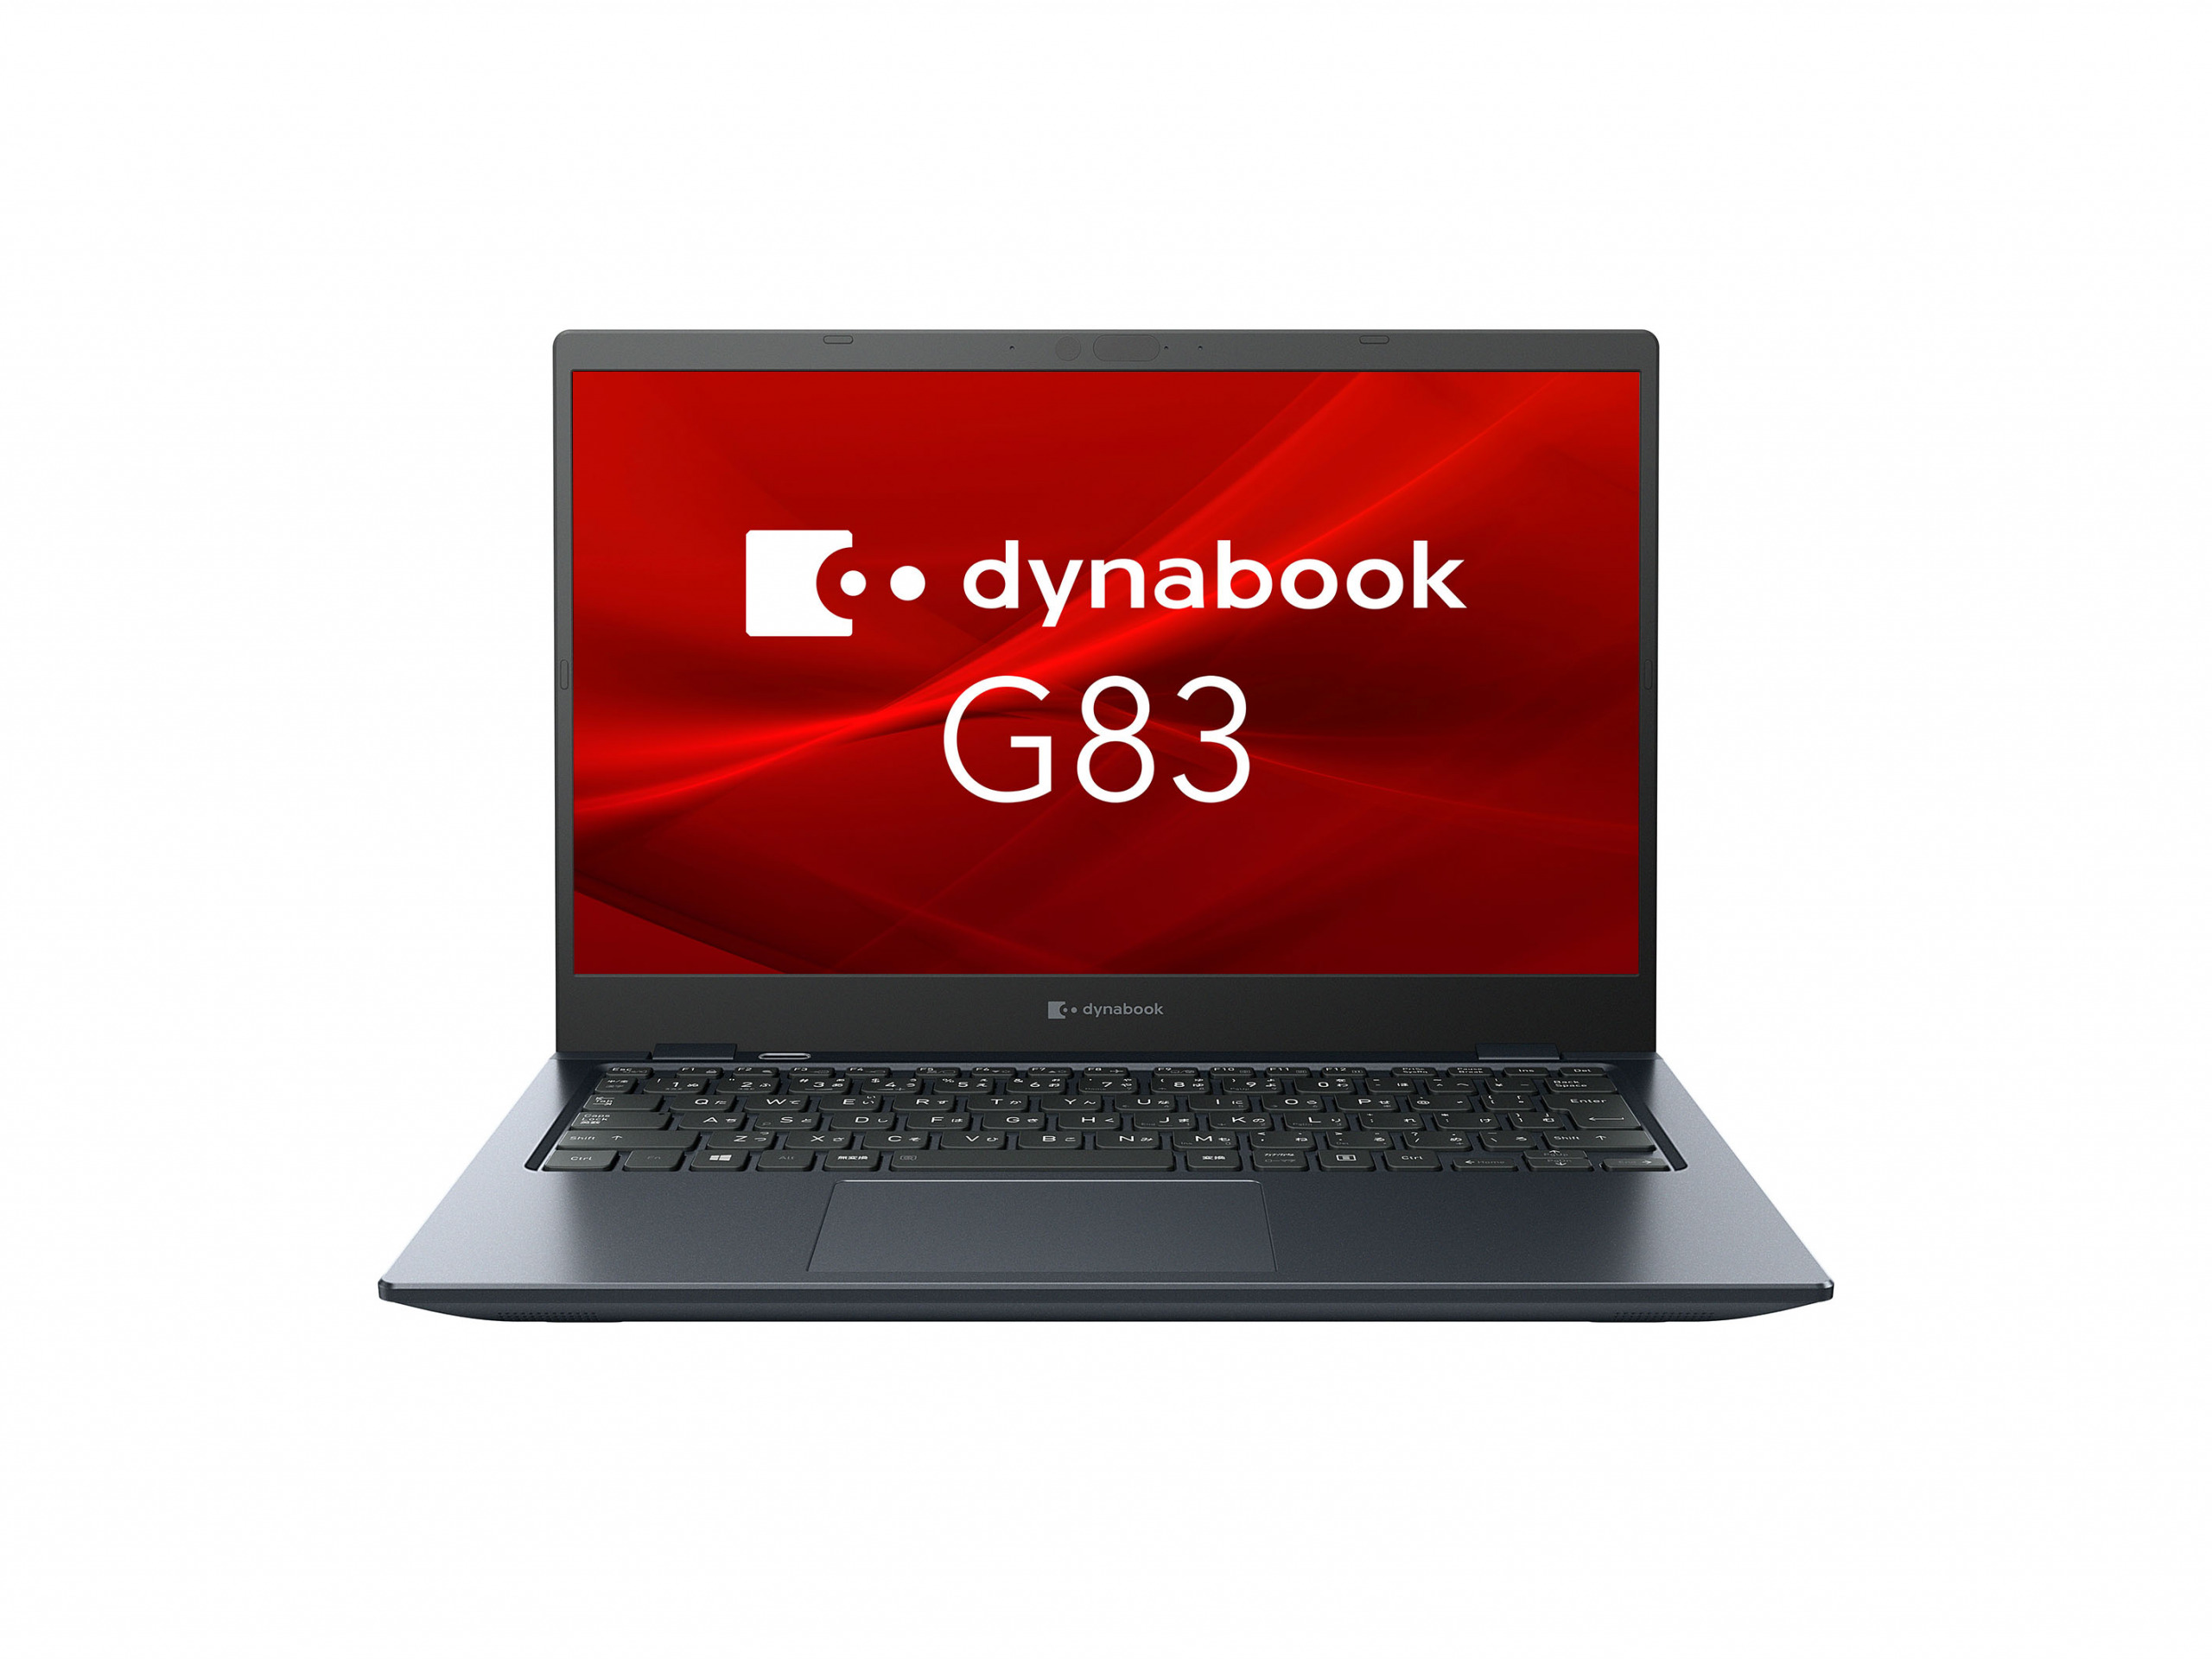 Dynabookが5in1のプレミアムPenノートやインテル Evo搭載モデル 